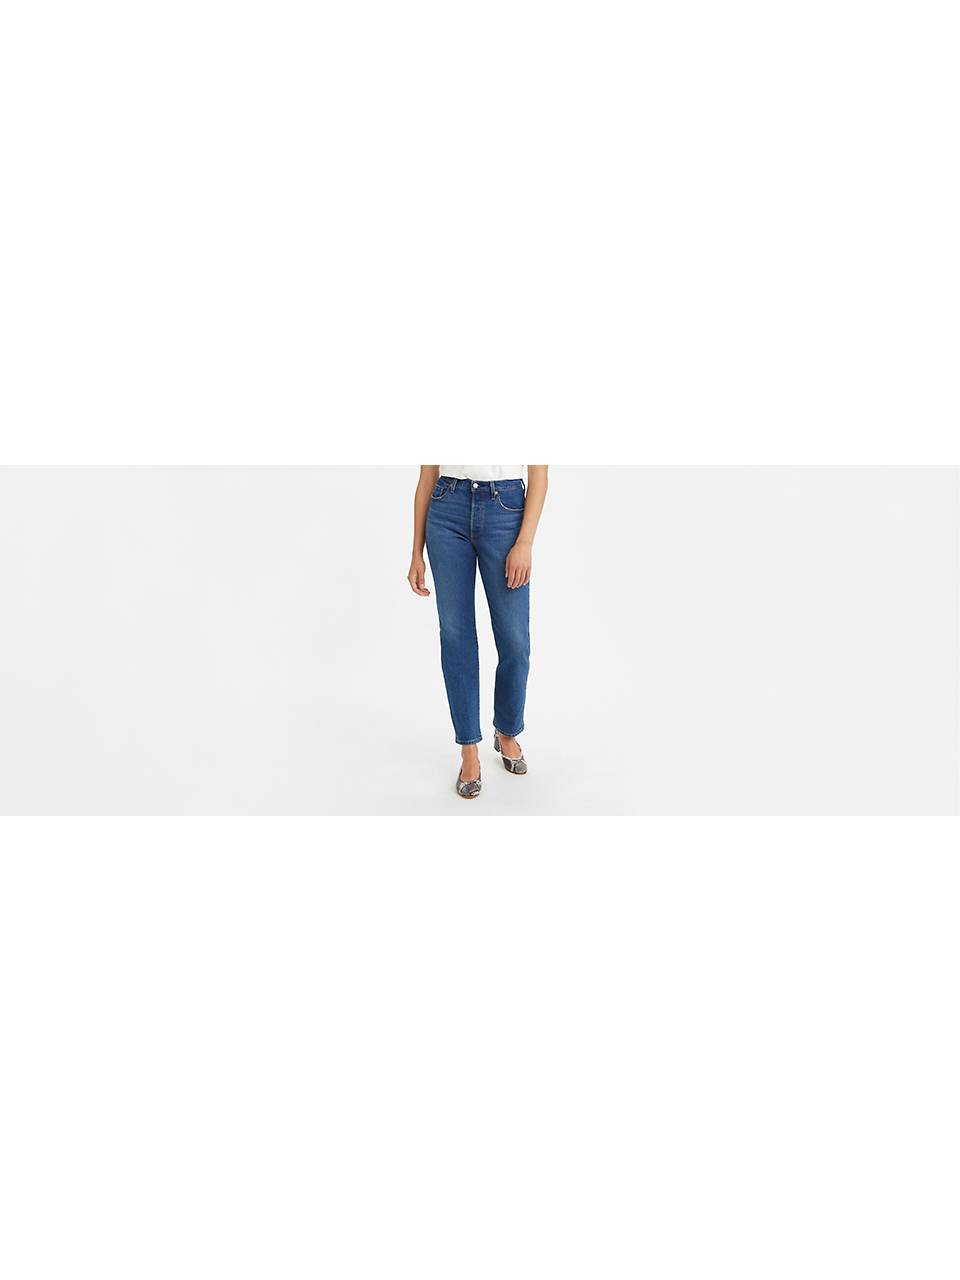 Women's Straight Leg Jeans: Shop Straight Fit Jeans | Levi's® US